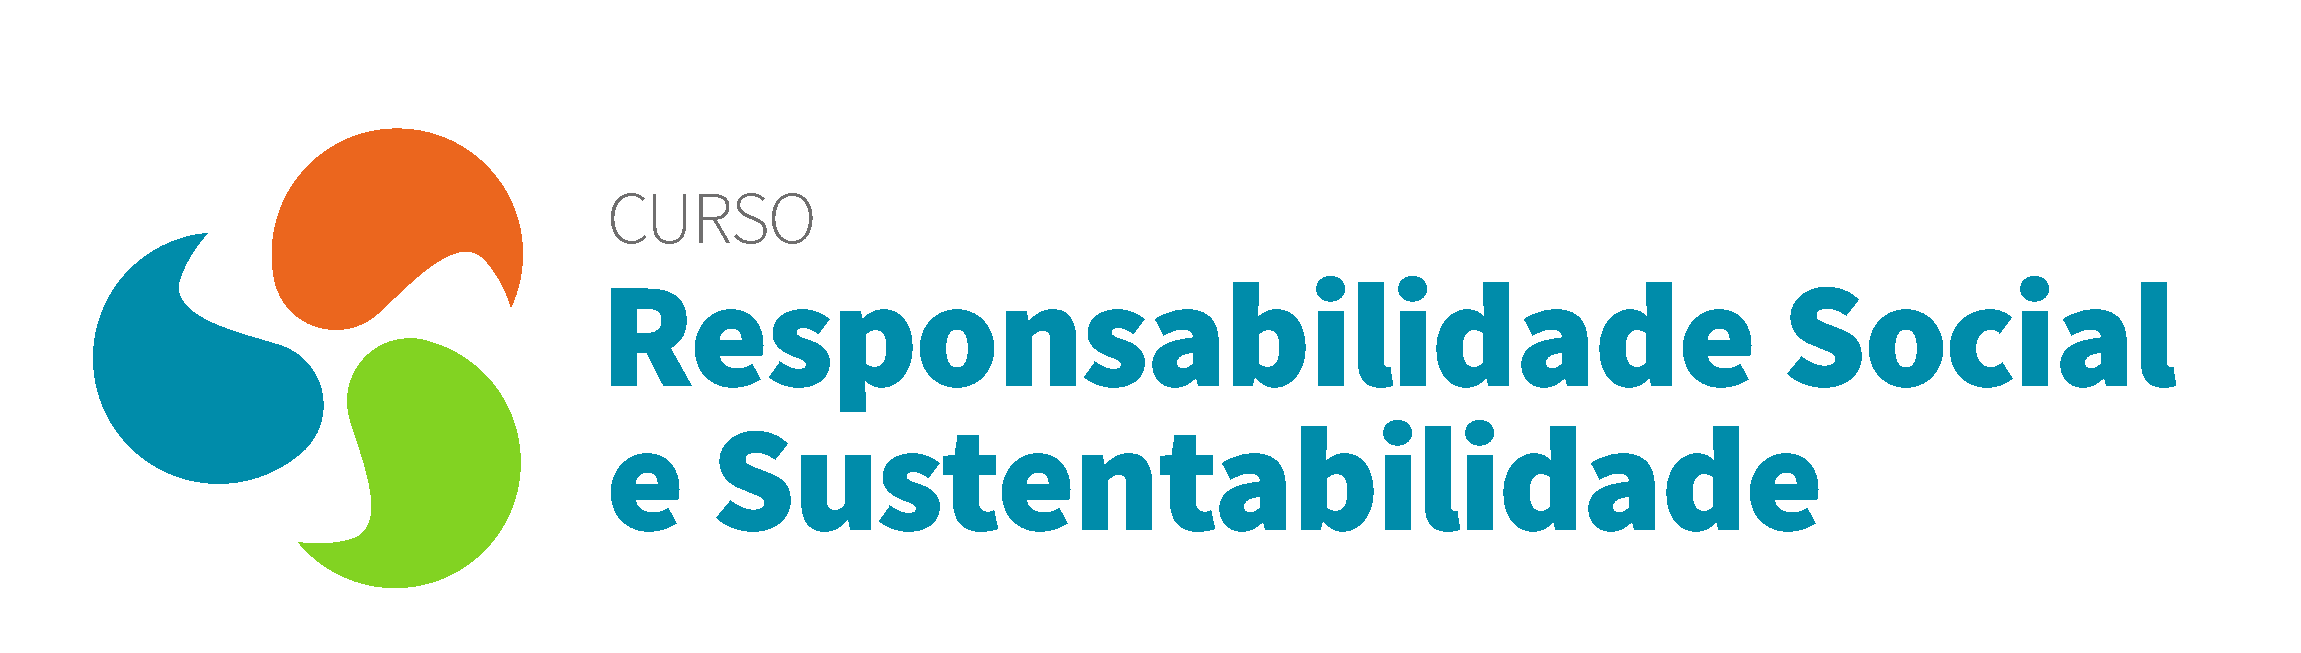 Curso de Responsabilidade Social abre inscrições para até o dia 23 de abril